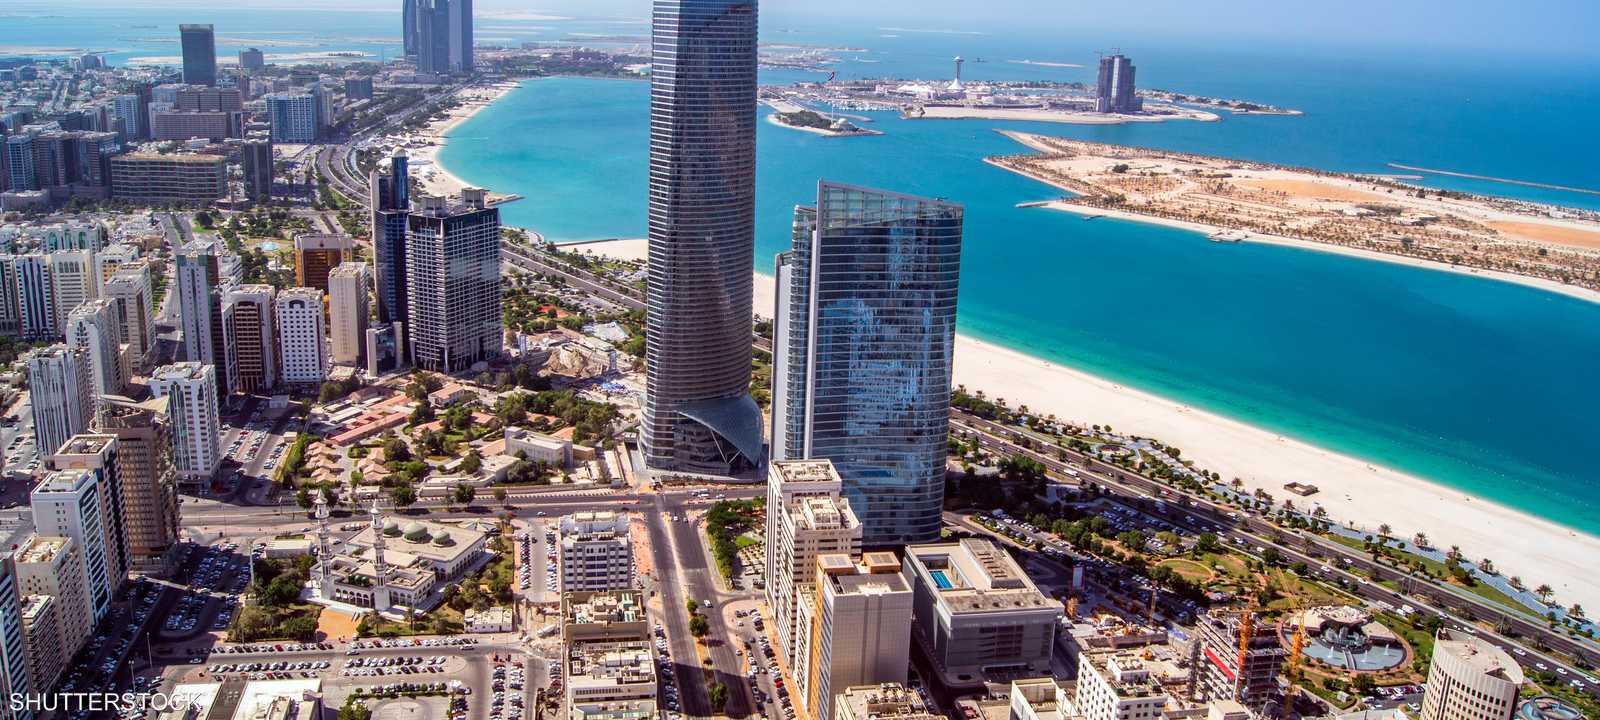 العاصمة الإماراتية أبوظبي